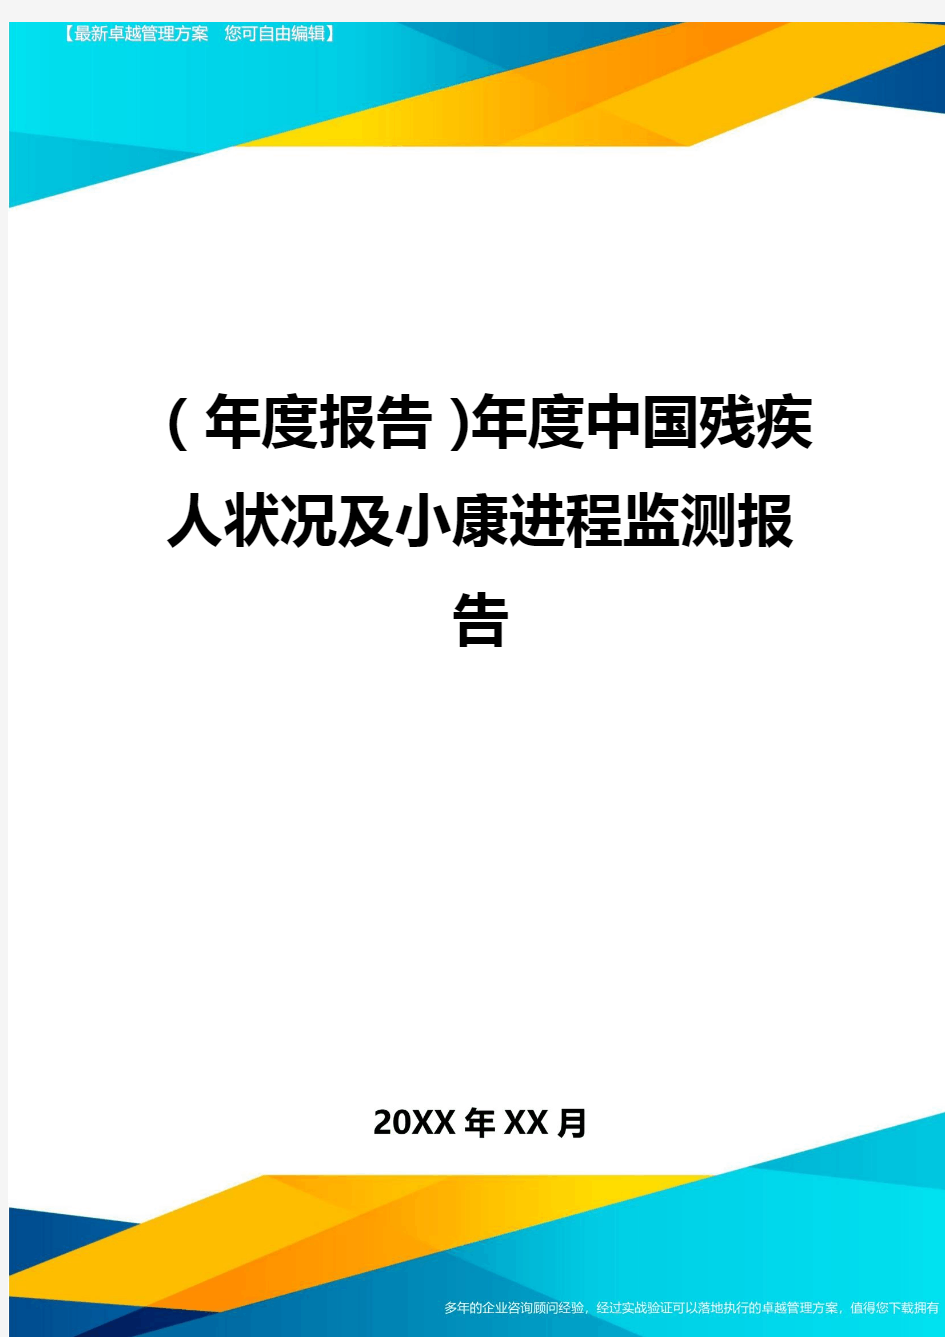 【年度报告】年度中国残疾人状况及小康进程监测报告